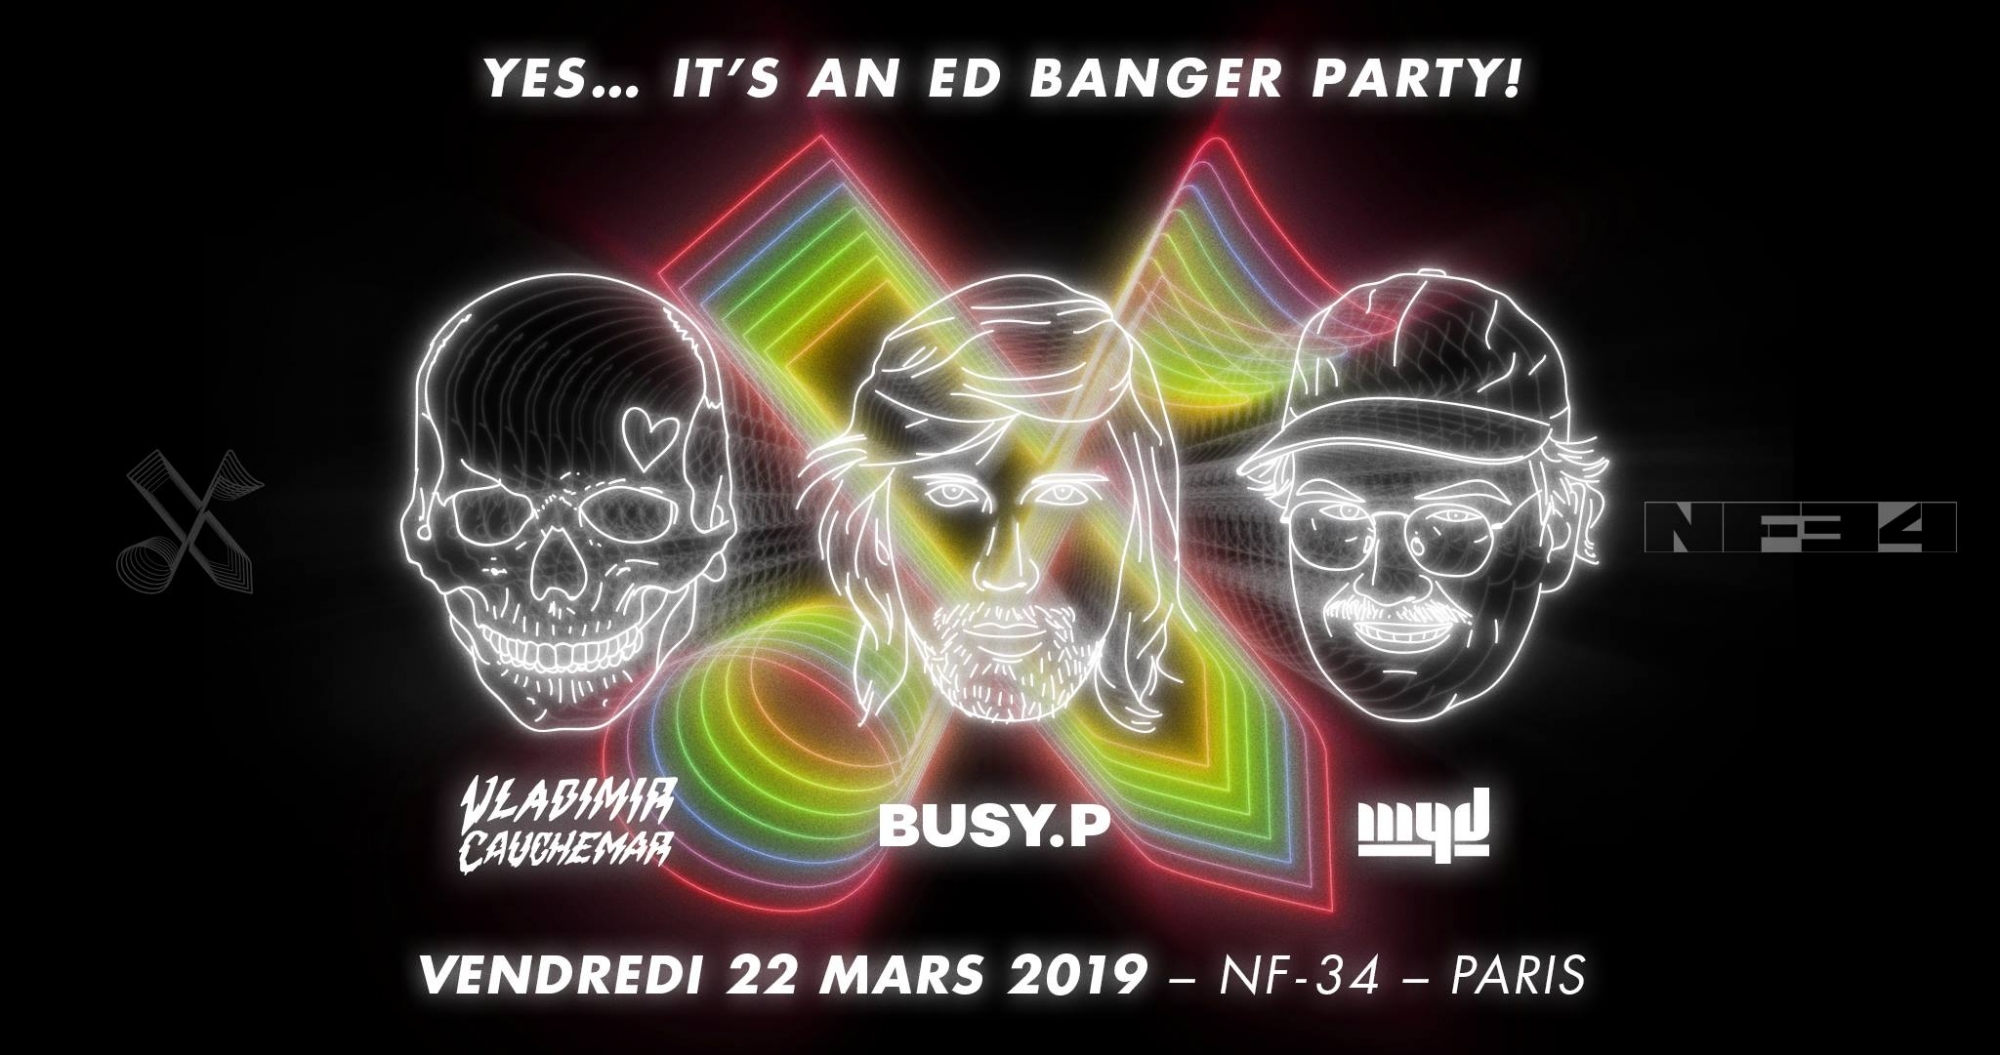 Ed Banger Party au NF-34 le 22 mars 2019